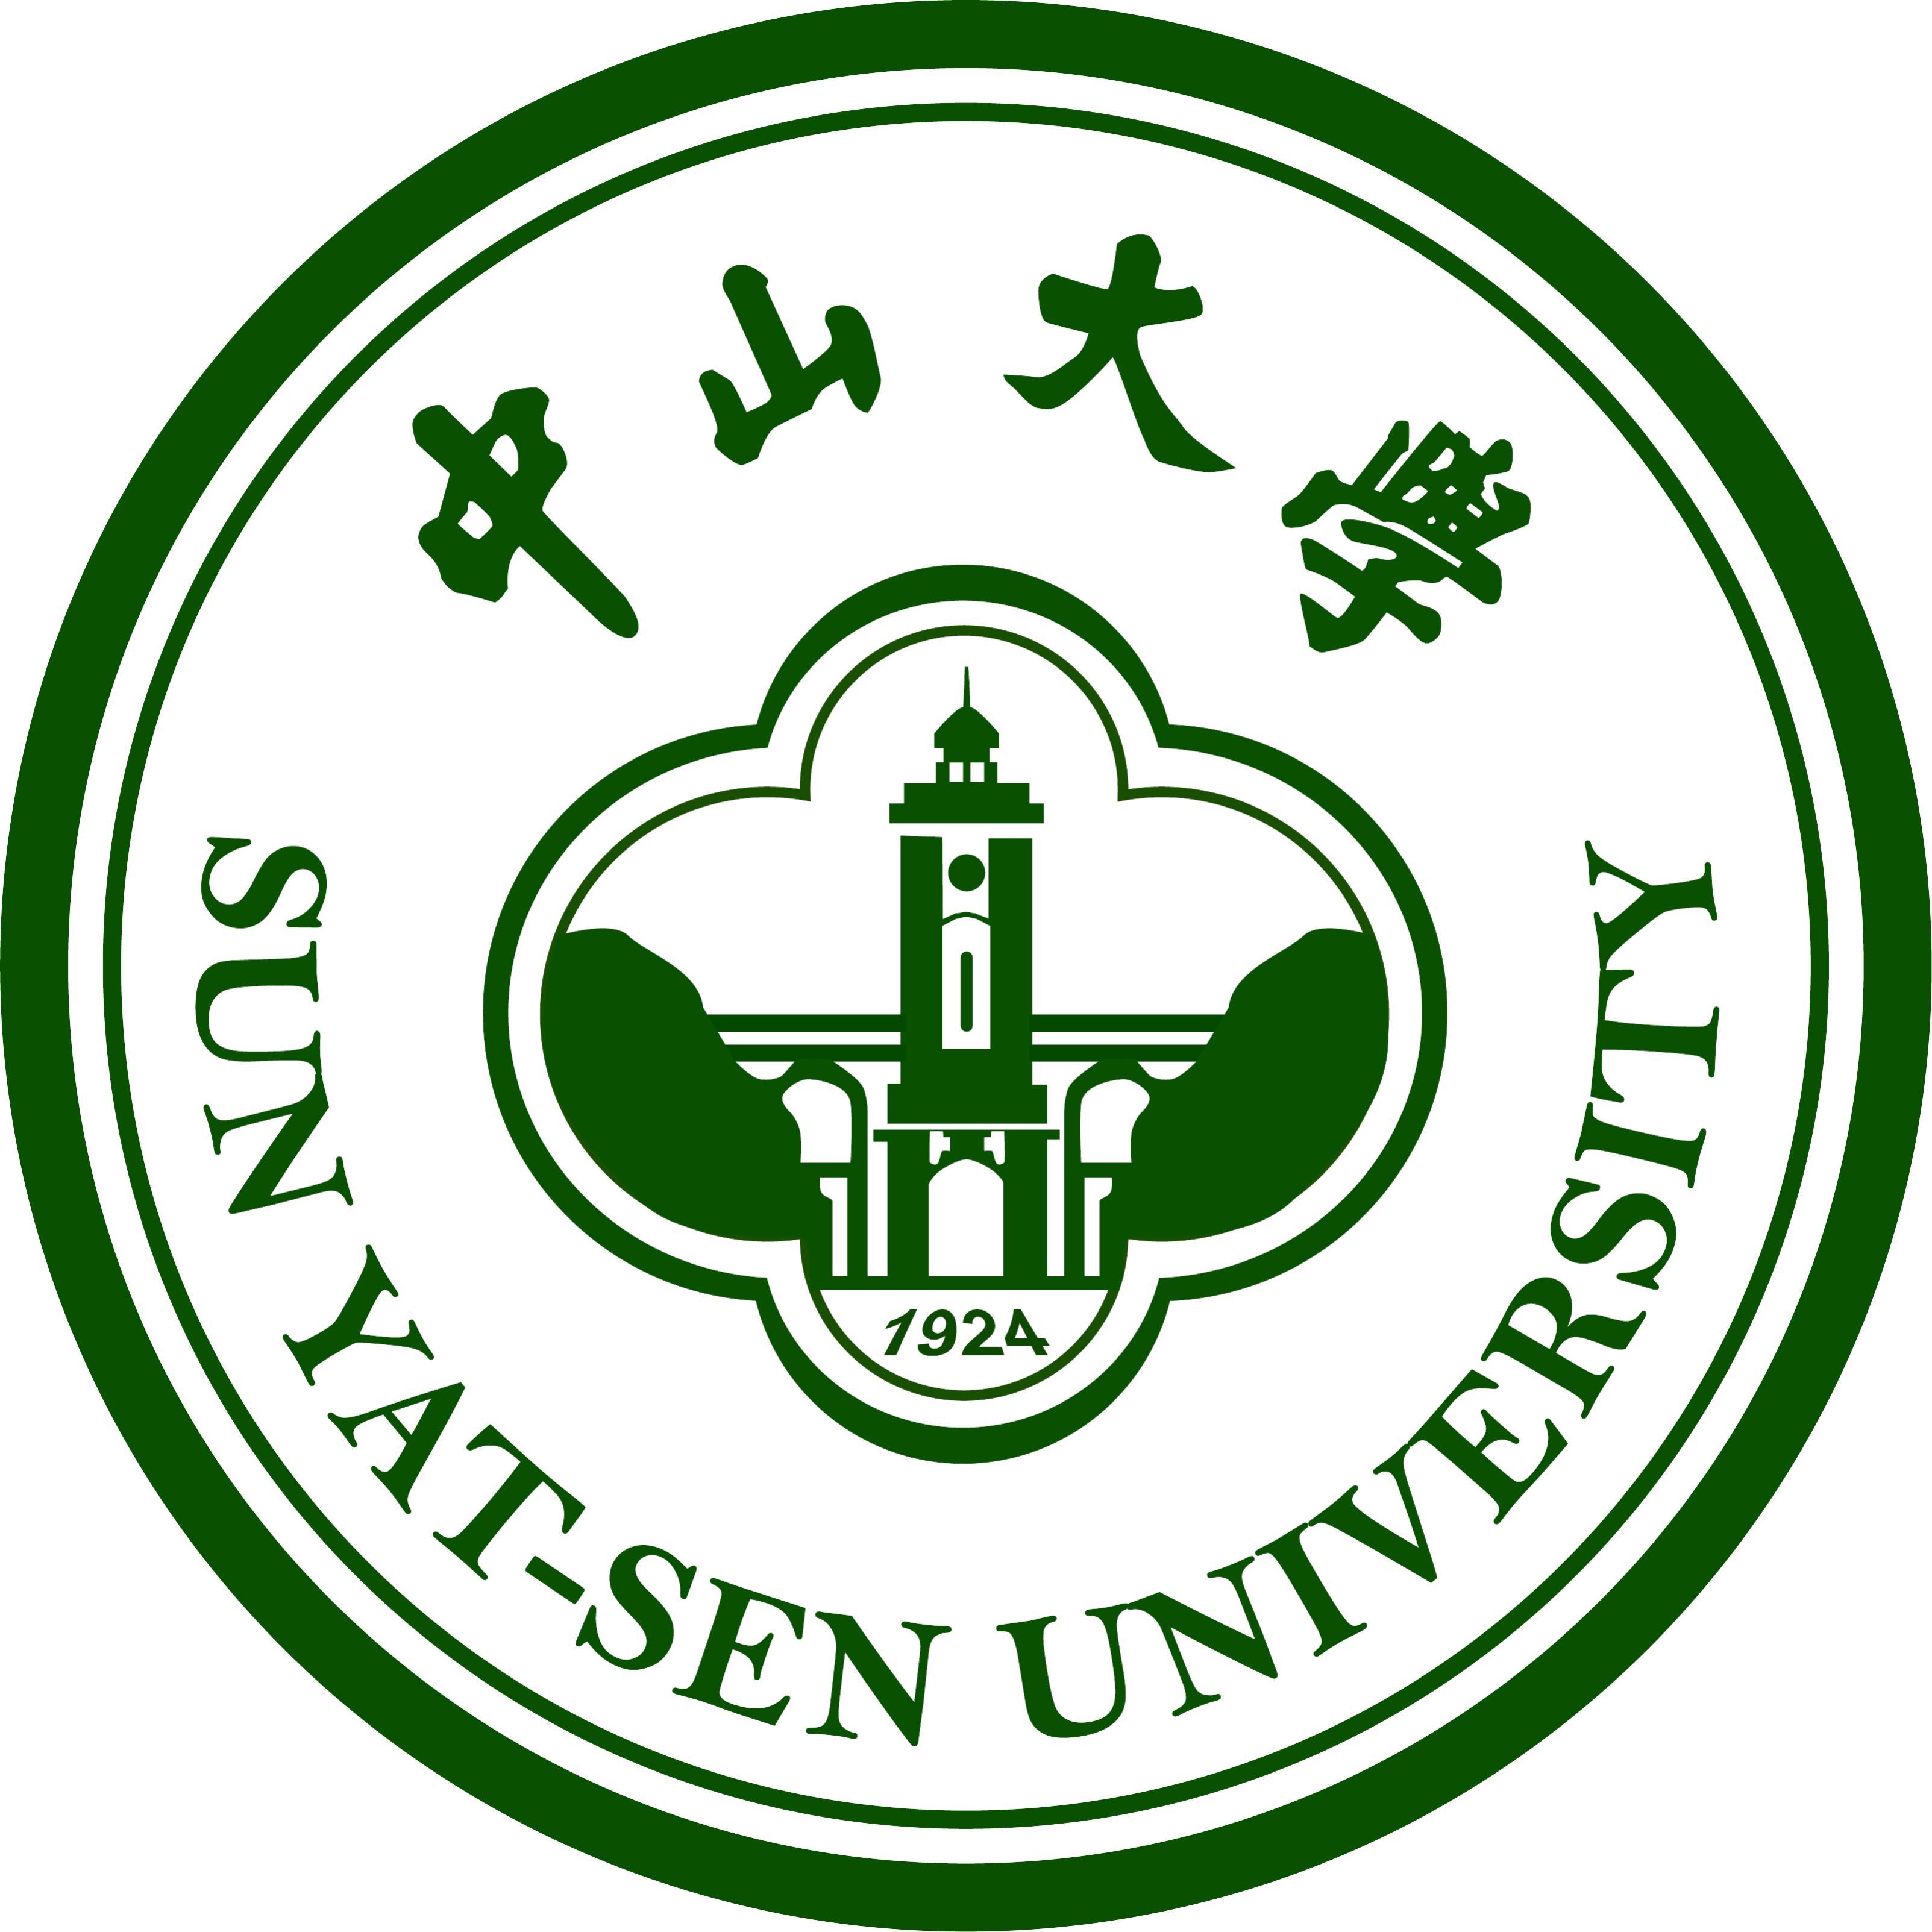 比如中山大学的绿色校徽:我们的答辩ppt上,一般会加上学校的logo,所以